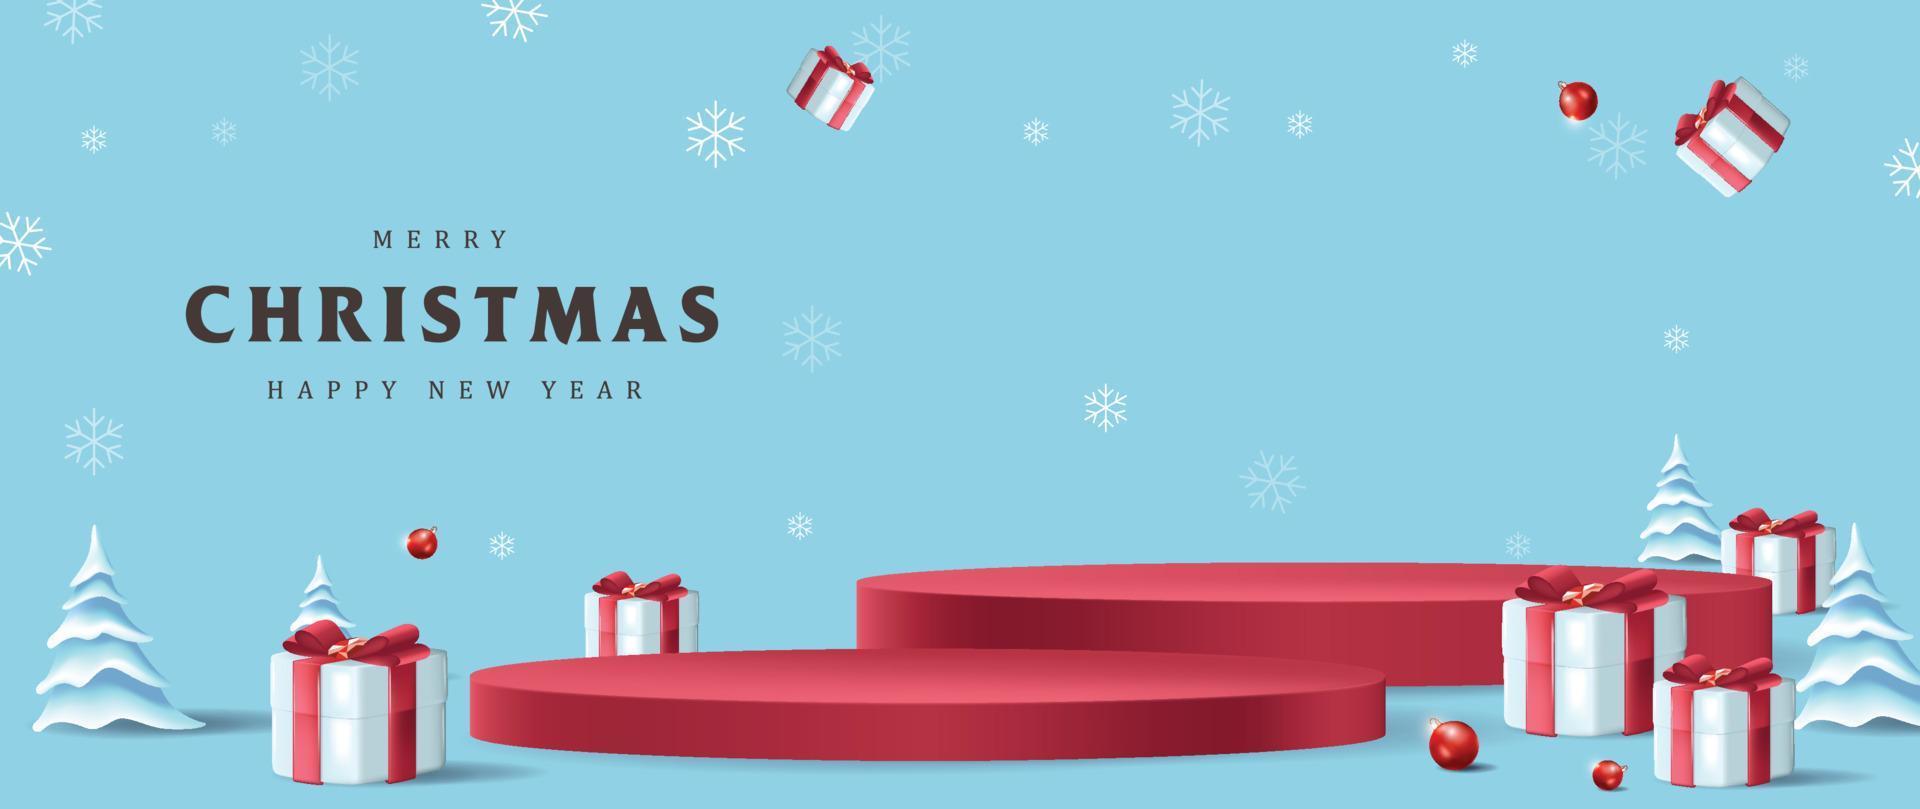 glad jul baner med produkt visa cylindrisk form och gåva låda röd rosett dekoration vektor